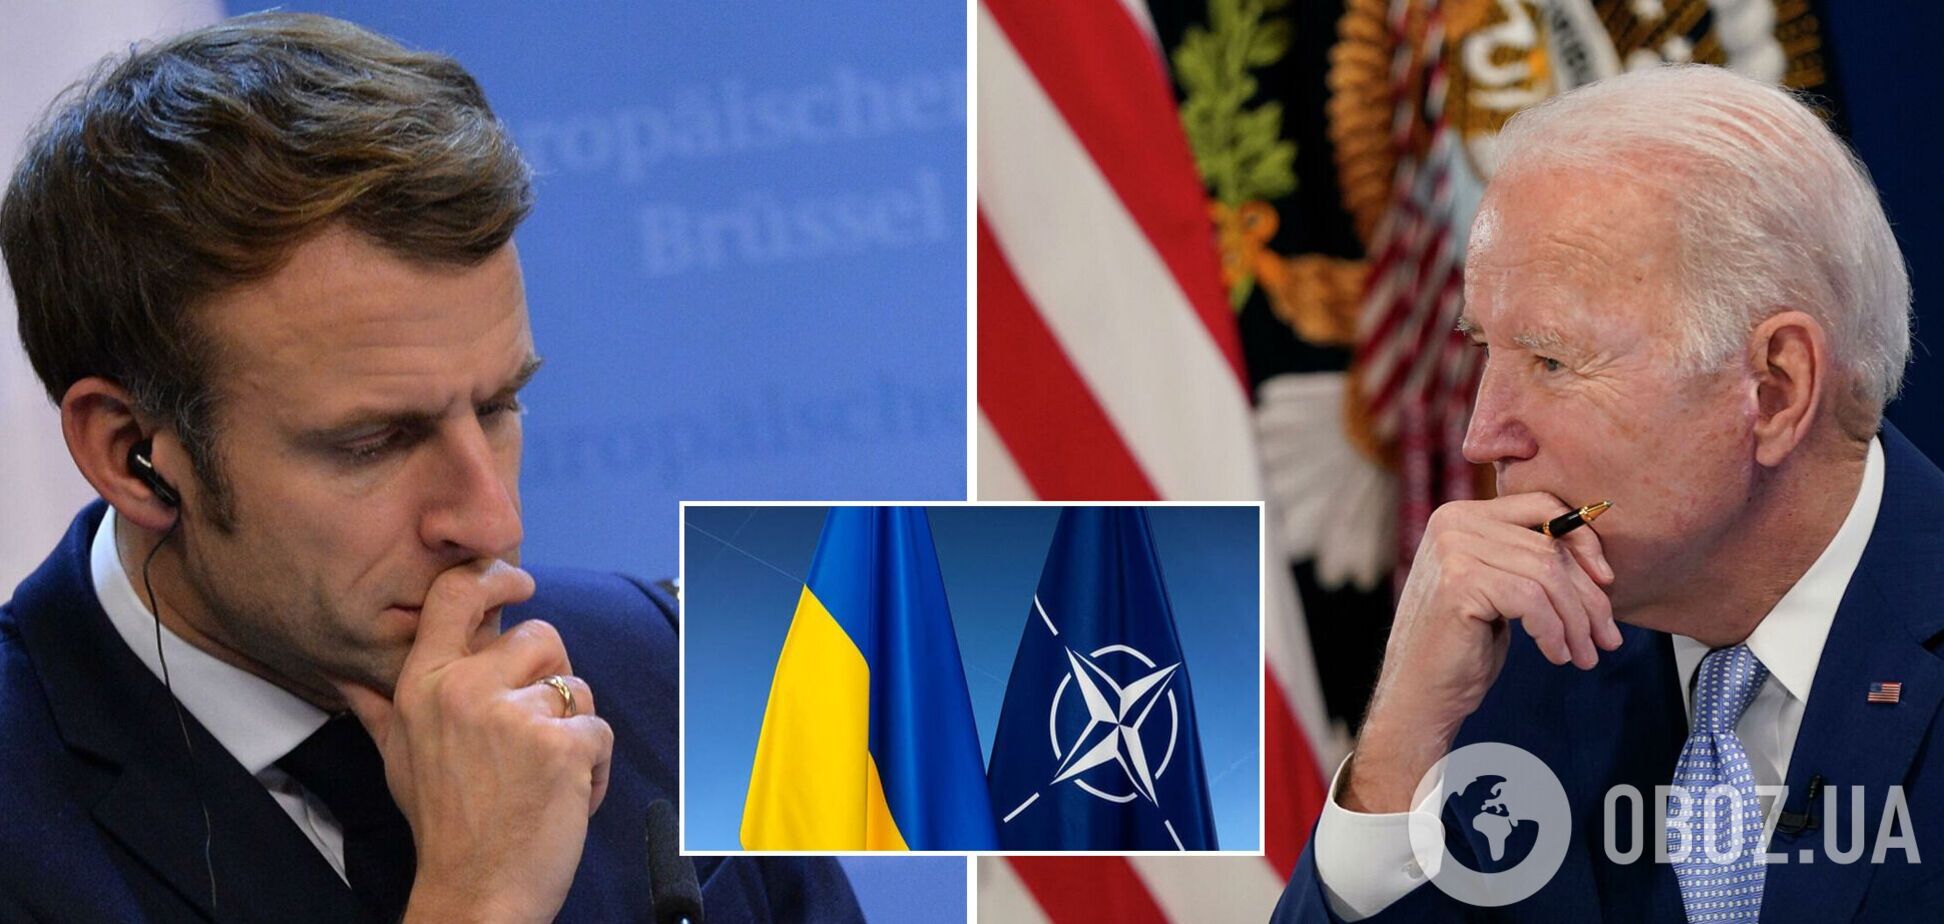 Байден и Макрон обсудили Украину: заявление Белого дома